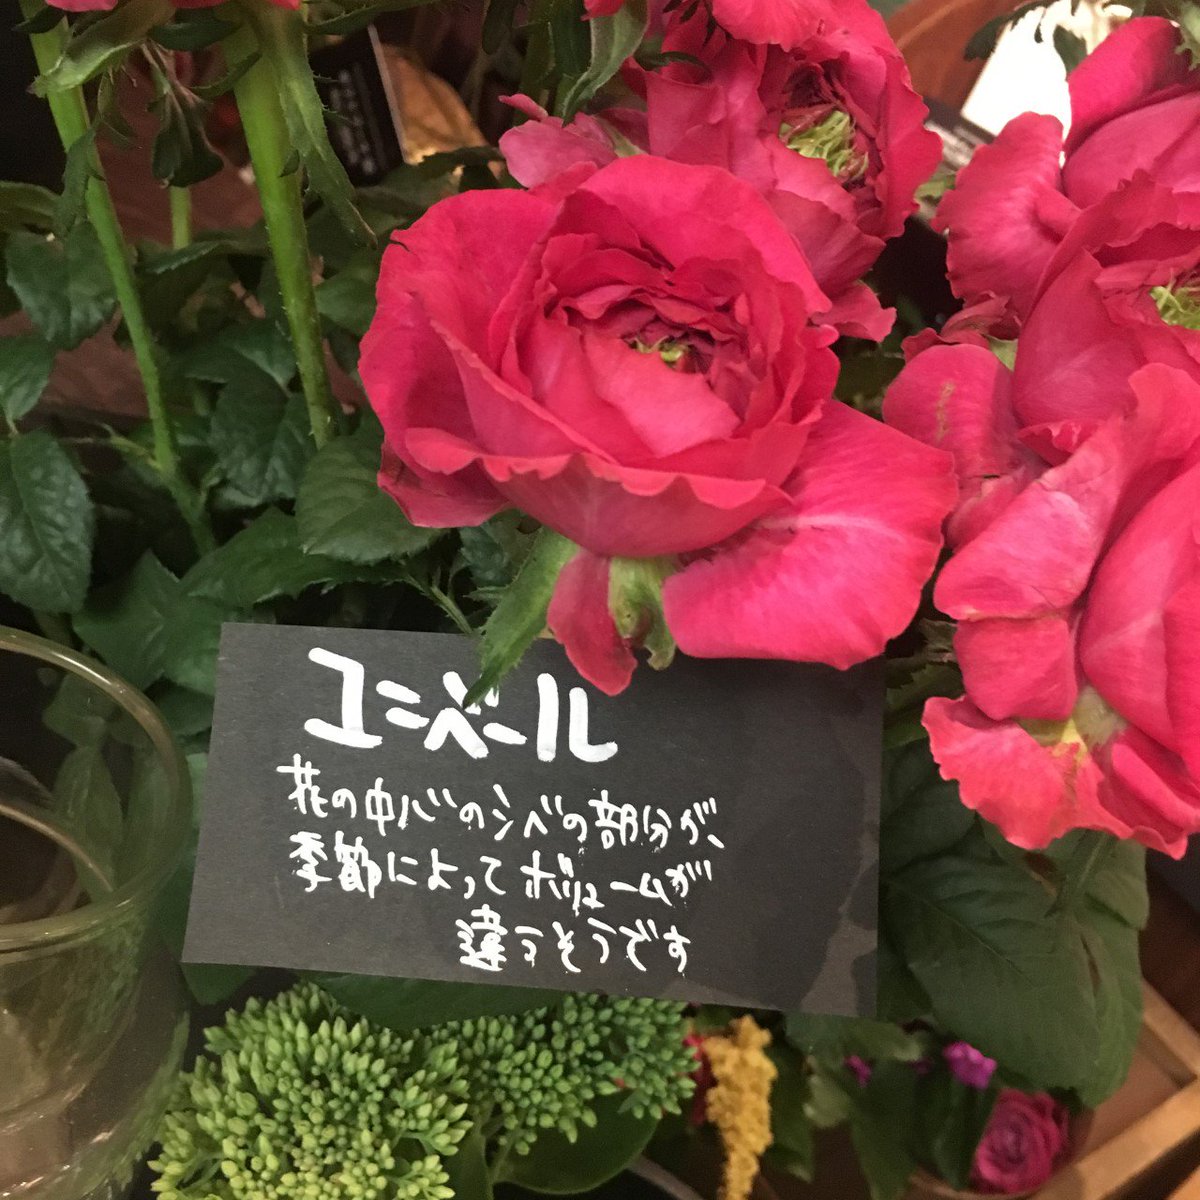 青山フラワーマーケット 先日ツイートした やぎばら園さんの バラ ですが 品種名がわかるように写真アップしておきますね ๑ ڡ ๑